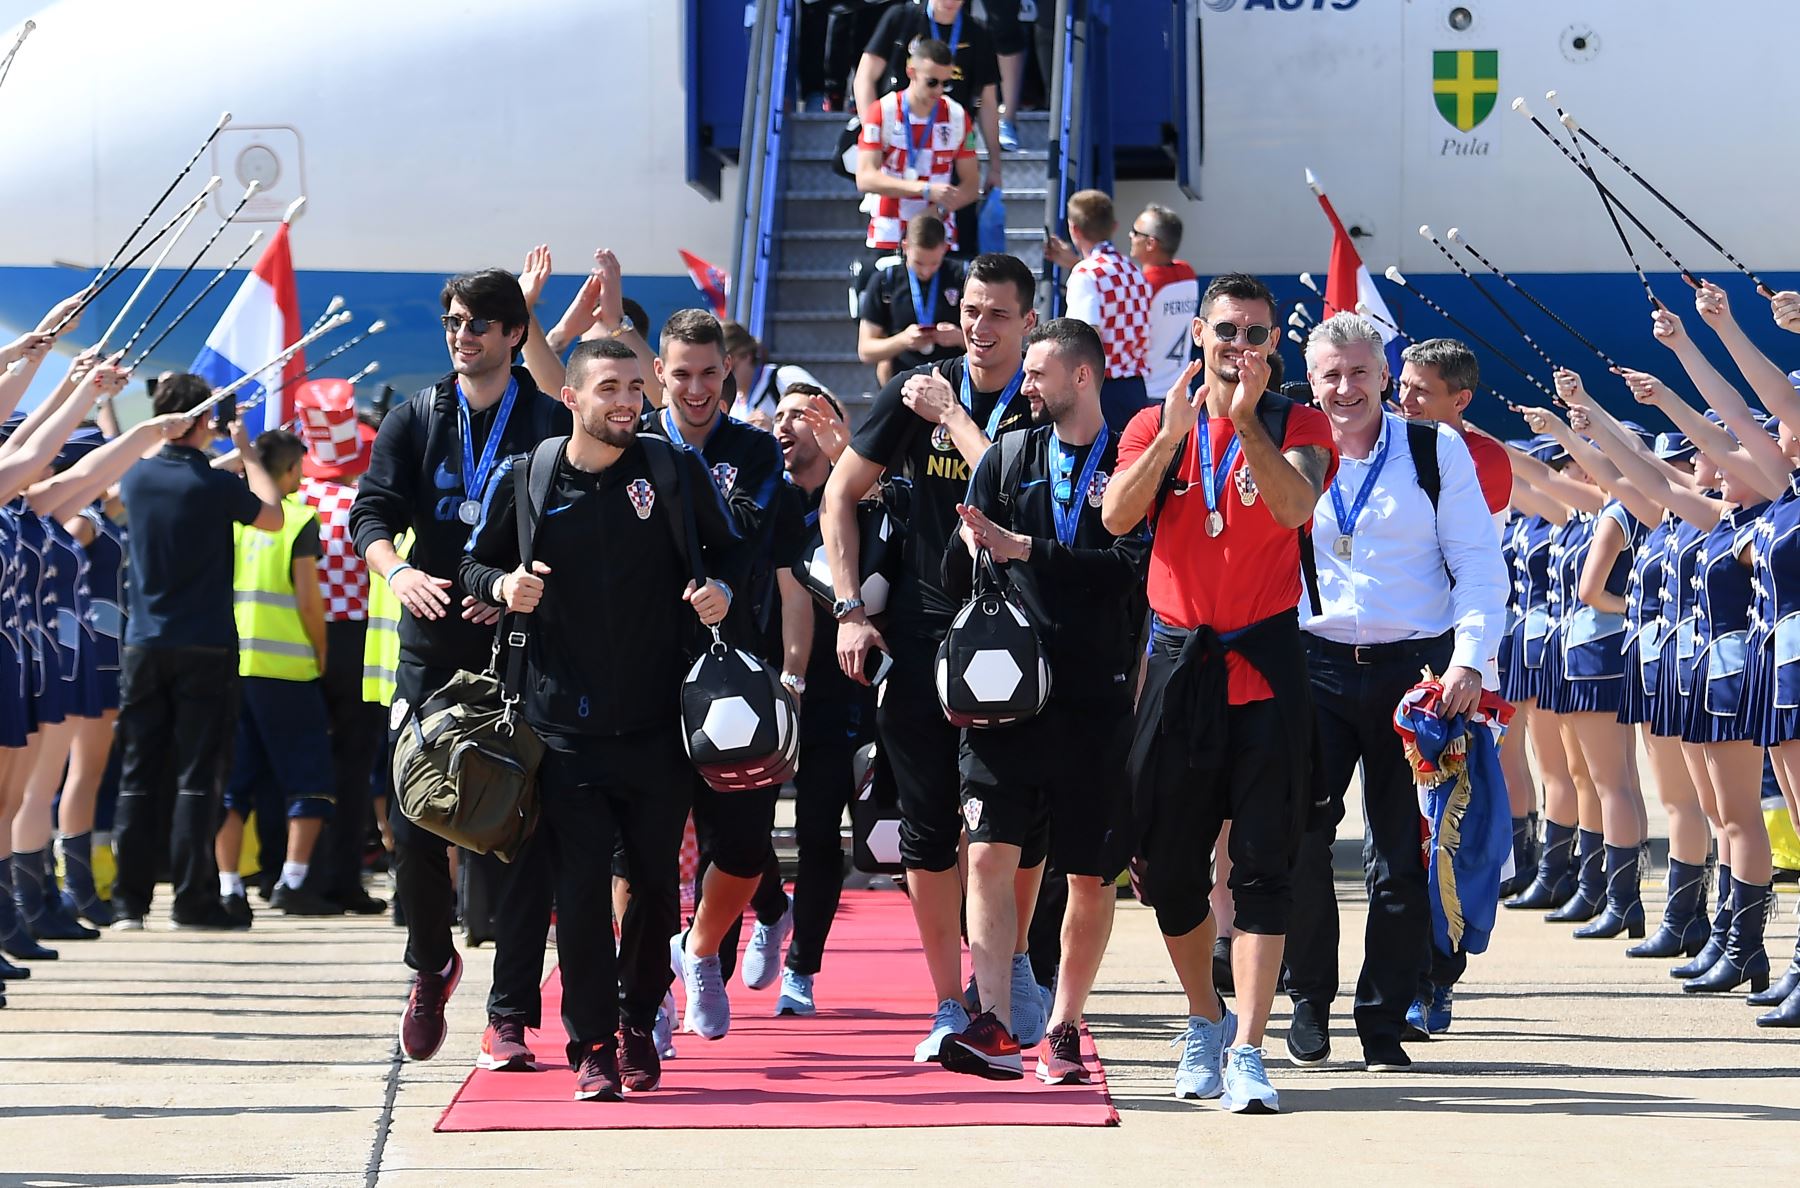 Los miembros del equipo nacional de fútbol croata salen de su avión Airbus 319 en el aeropuerto internacional de Zagreb  después de su regreso de la Copa Mundial de la FIFA 2018 en Rusia en el aeropuerto internacional de Zagreb. AFP